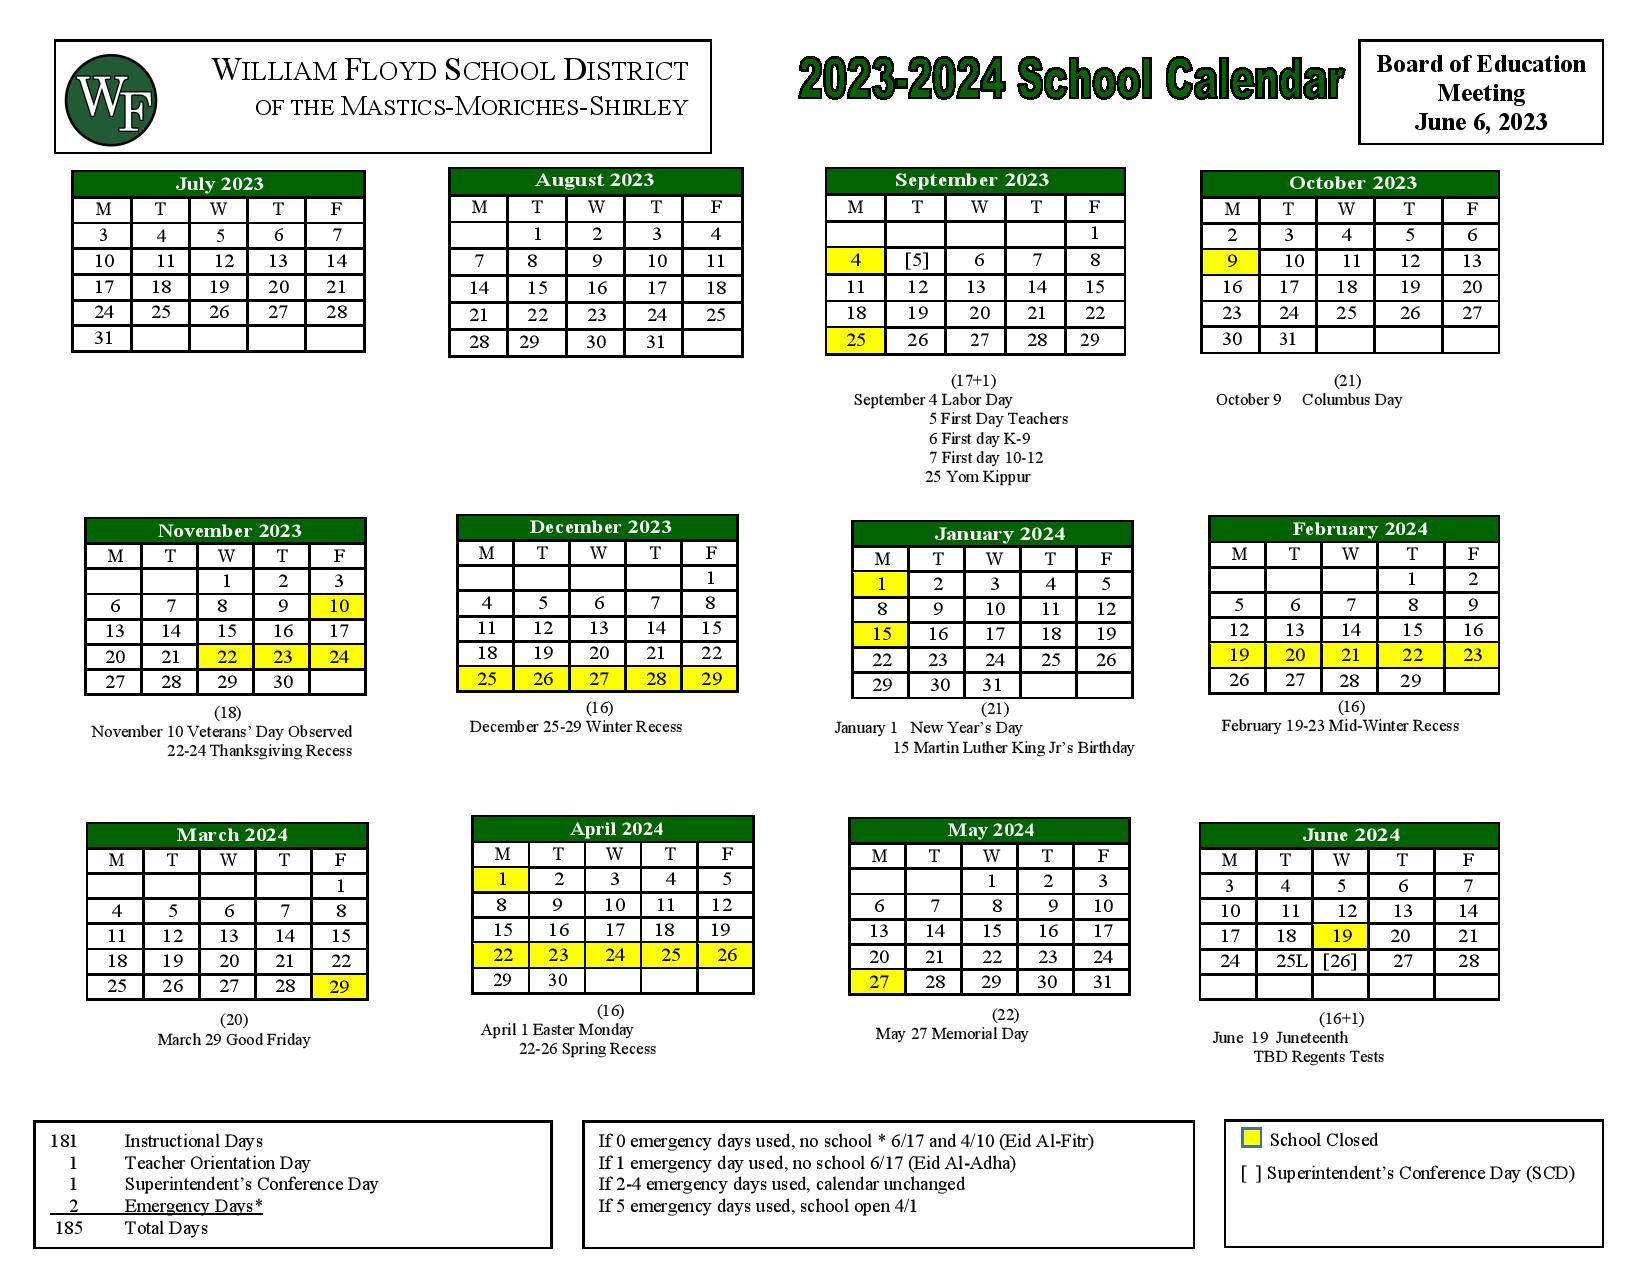 William Floyd School District Calendar 2024 in PDF